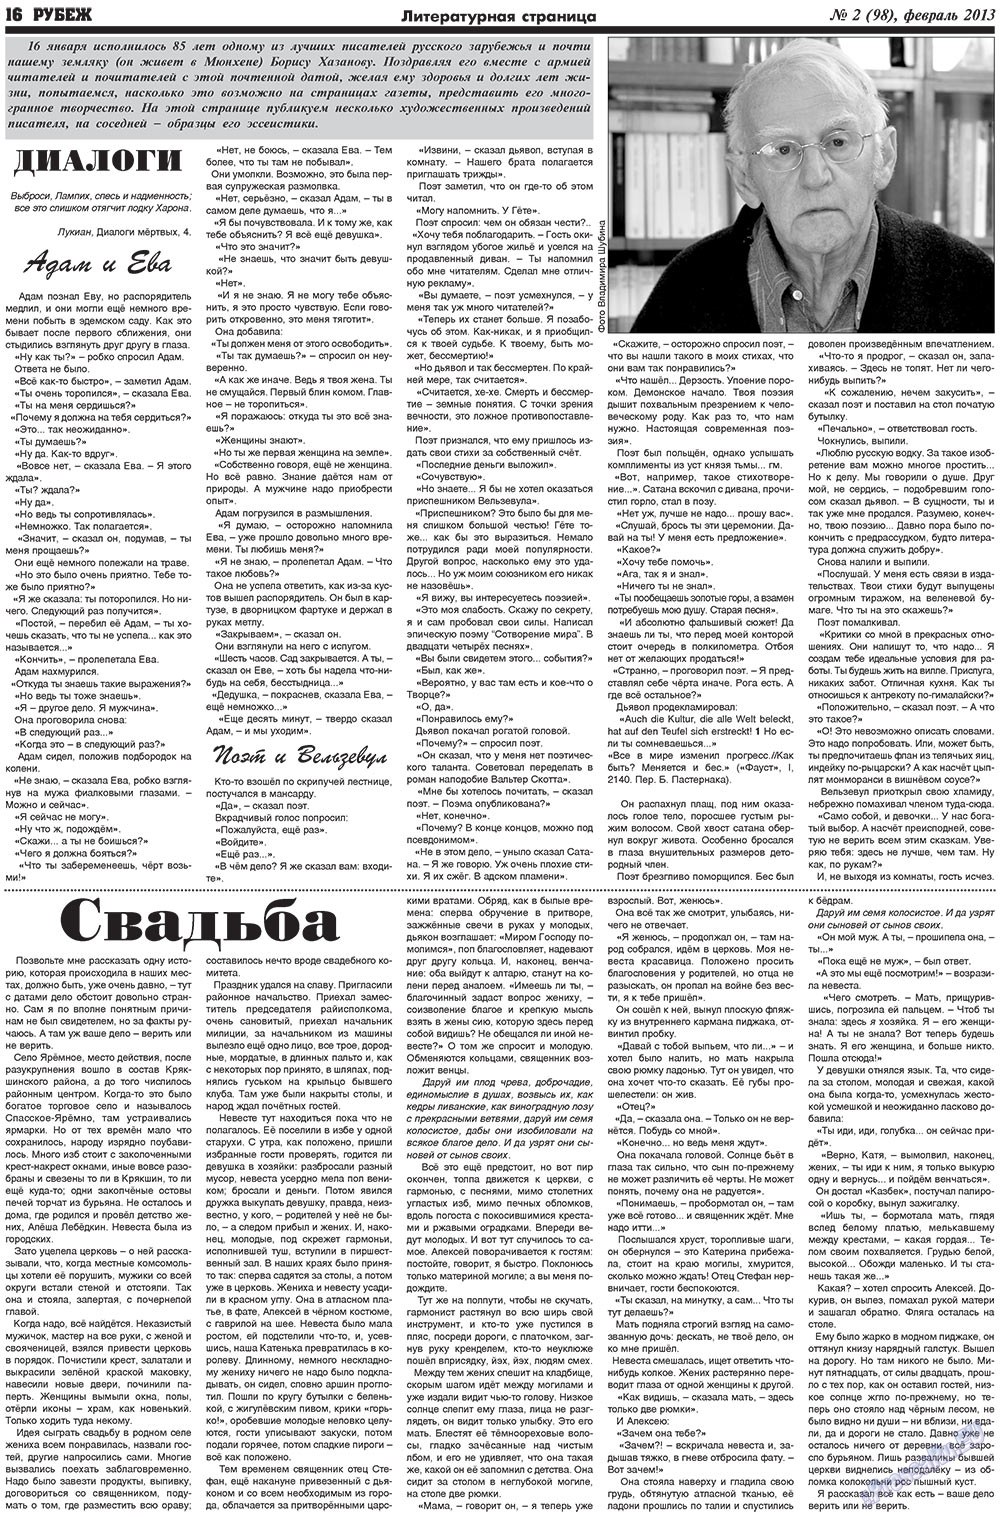 Рубеж (газета). 2013 год, номер 2, стр. 16